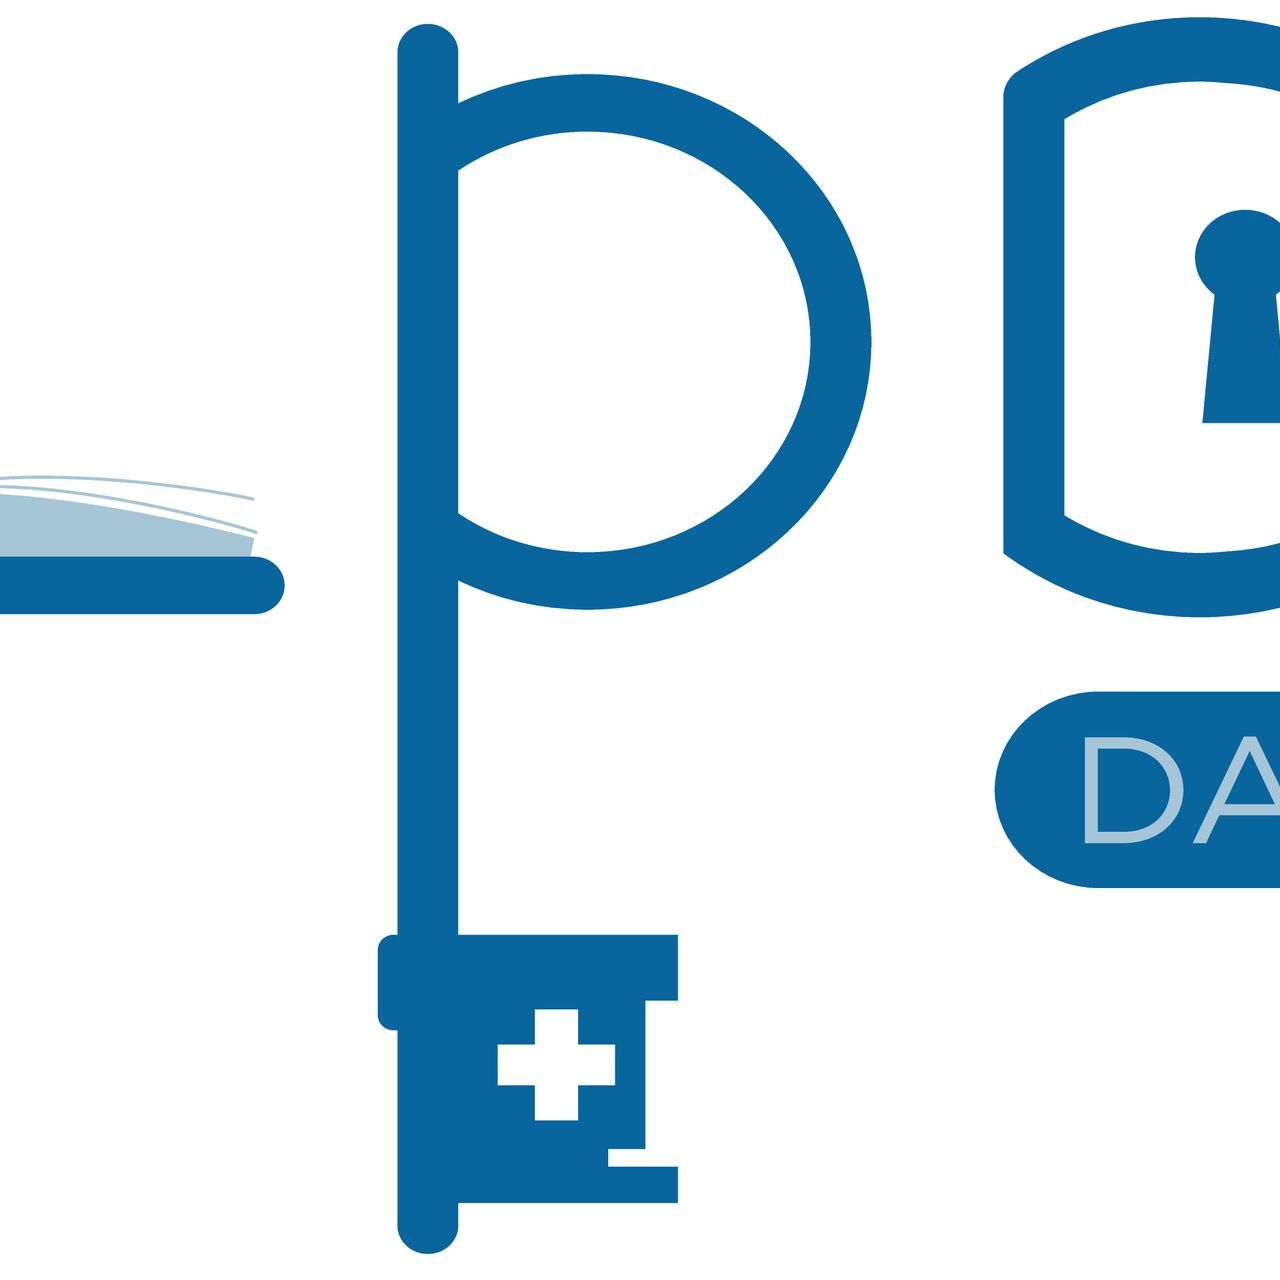 Il logotipo dello LPD Day